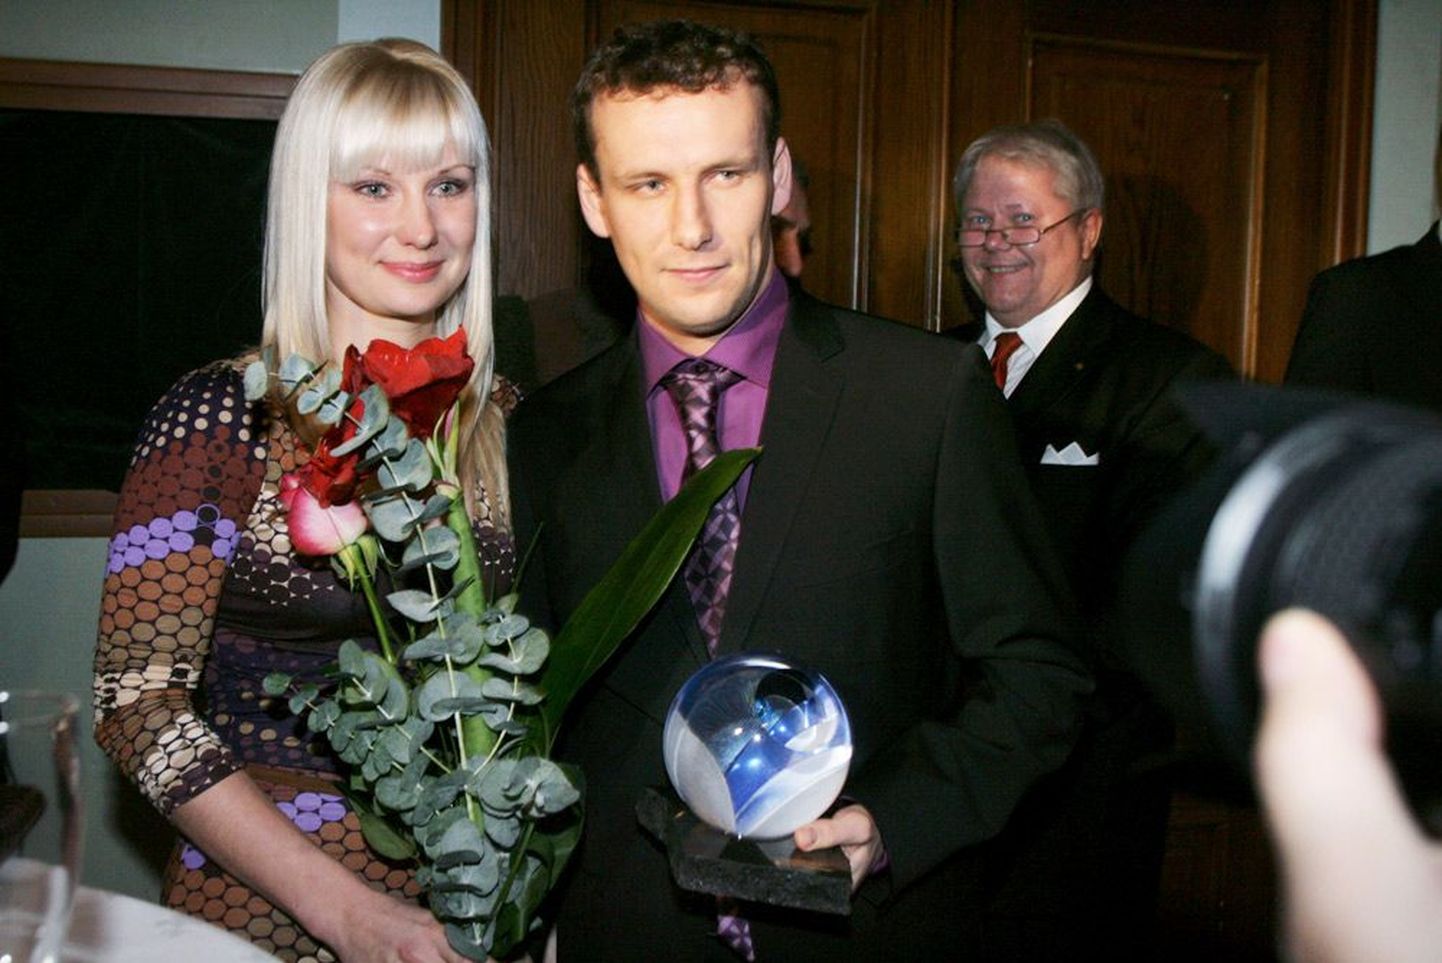 Eelmisel aastal Eesti aasta jalgpalluriks valitud Konstantin Vassiljev koos abikaasa Janaga pärast mängumehe aasta kodanikuks kuulutamist.